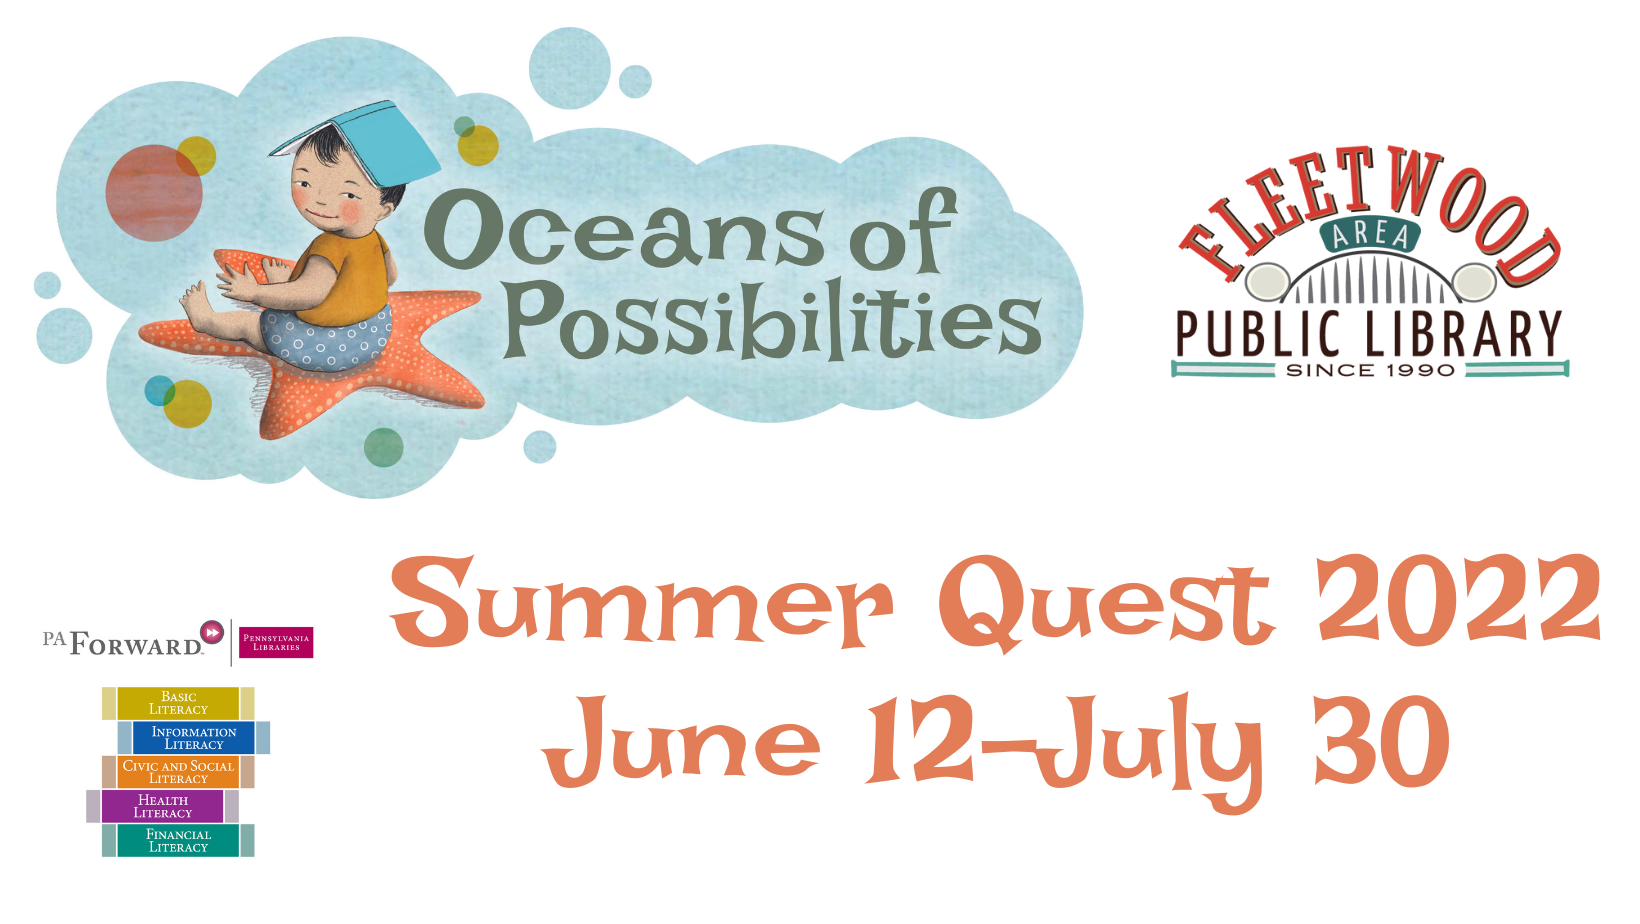 Summer Quest June 12-July 30